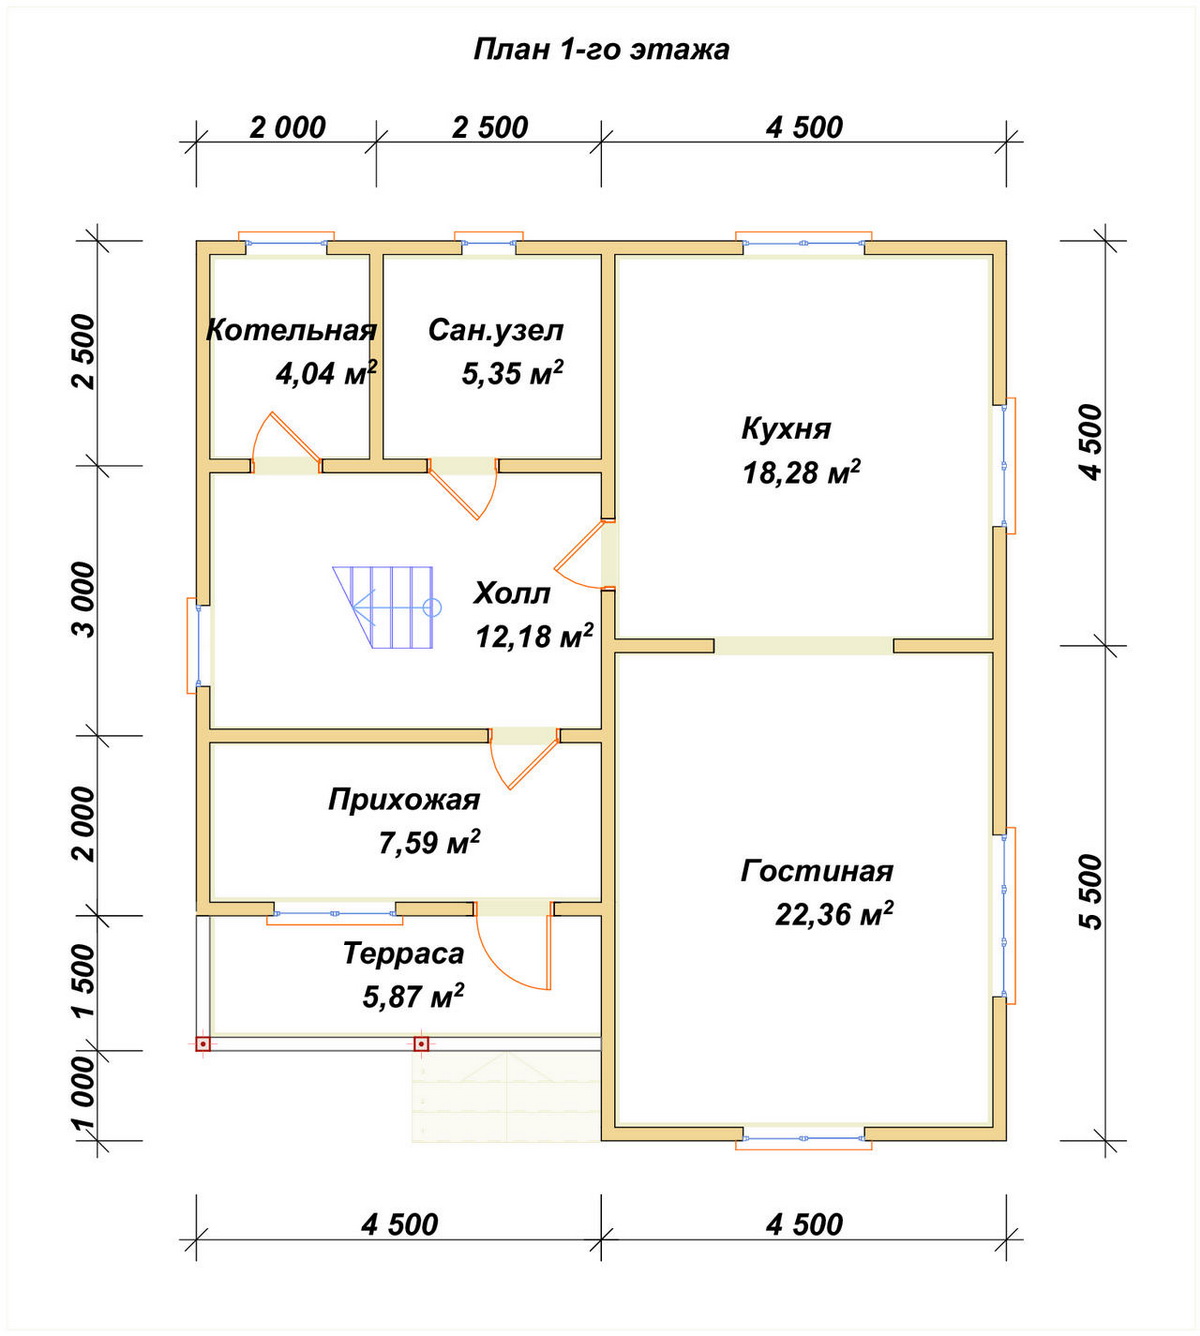 Планировка 1-го этаж дома ДБ-105